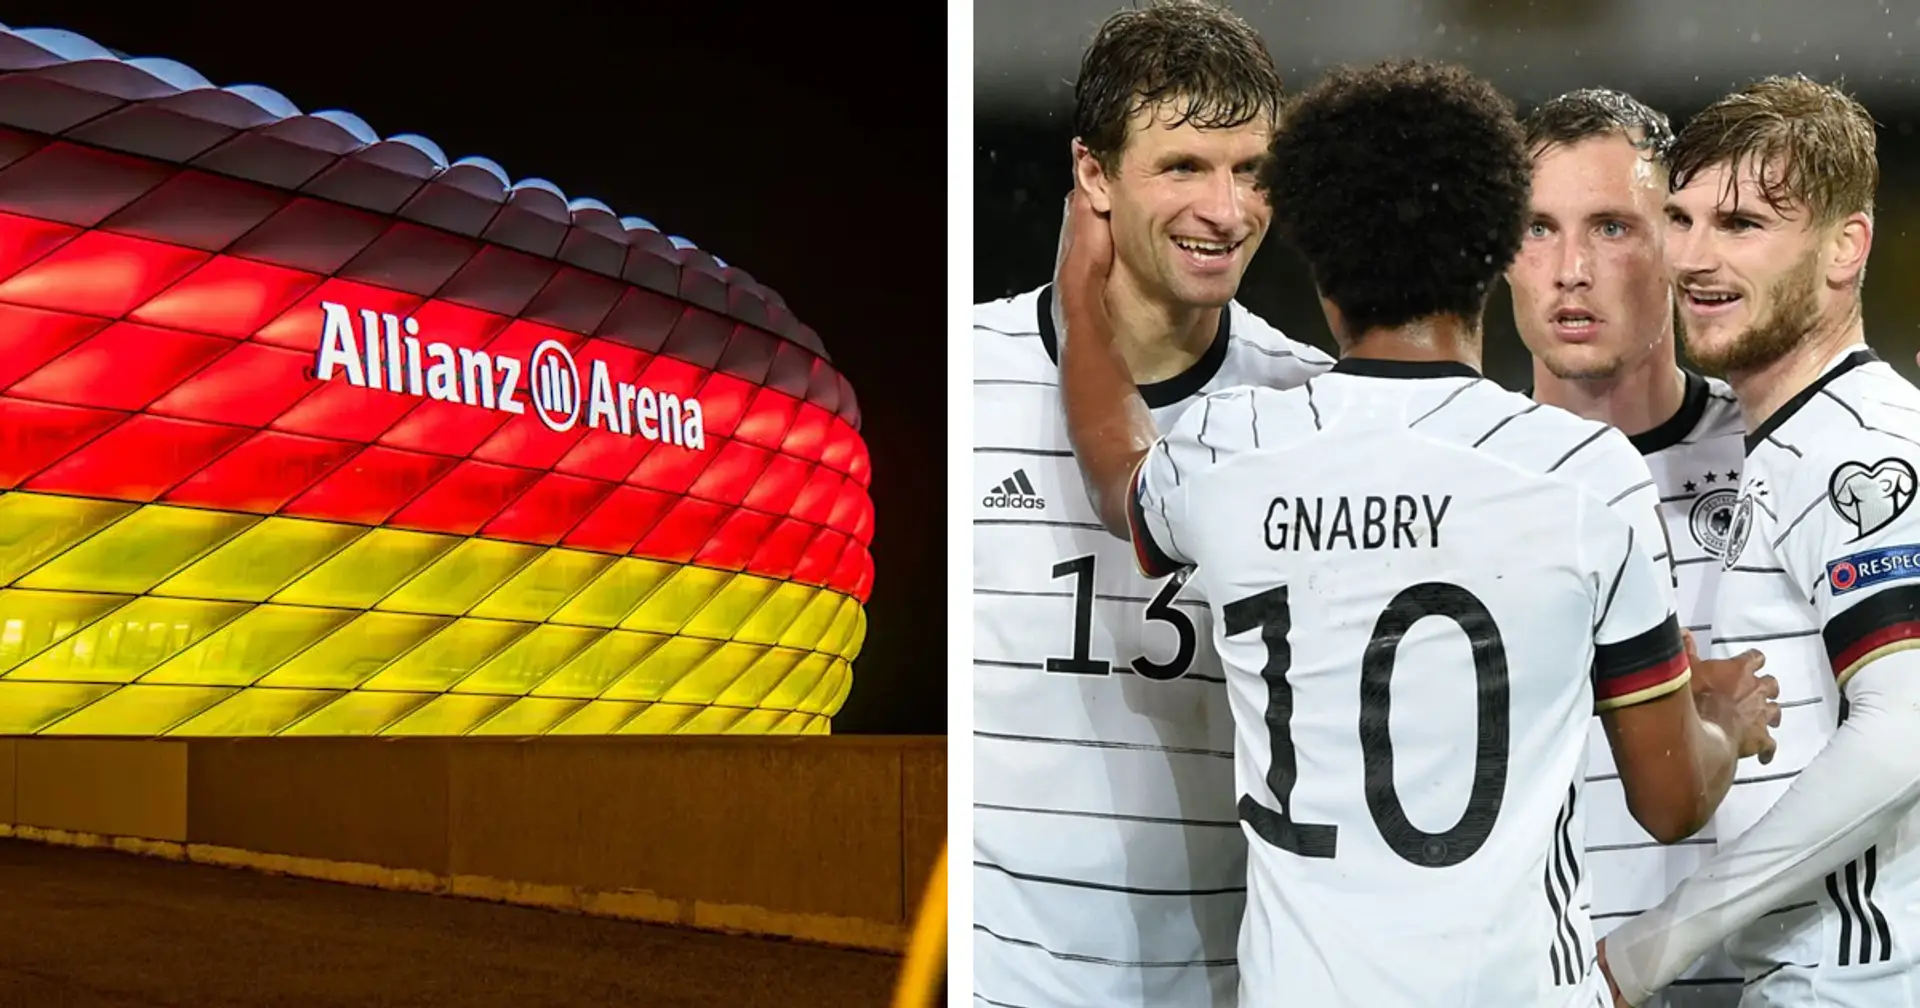 OFFIZIELL: Deutschlands Spiele im Jahr 2022 wurden terminiert - Duell vs. England in der Allianz Arena